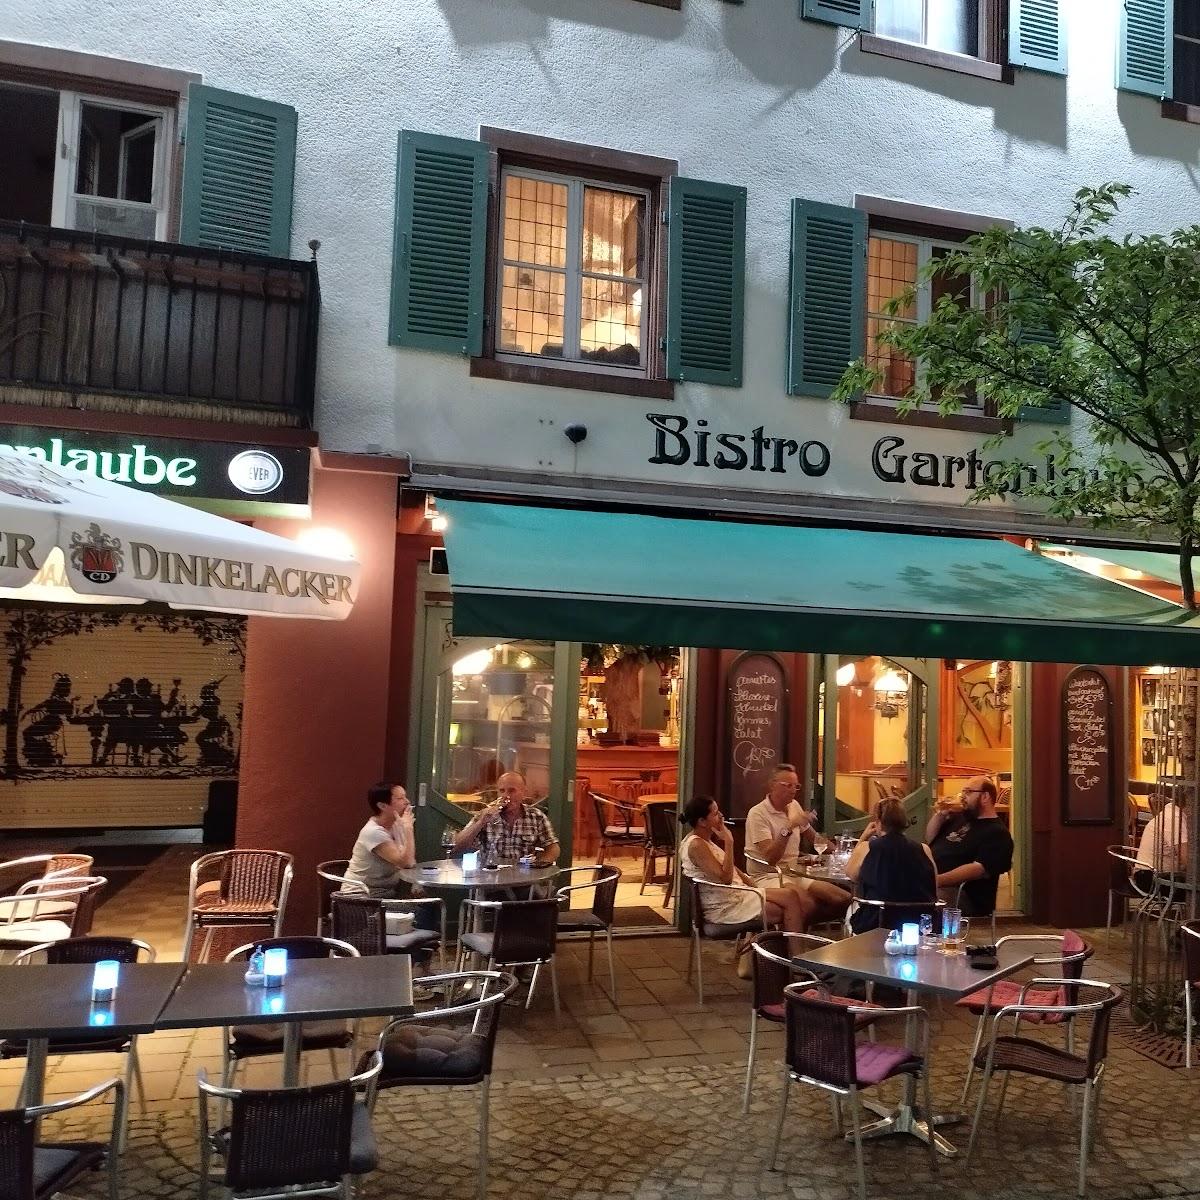 Restaurant "Bistro Gartenlaube" in Lahr-Schwarzwald